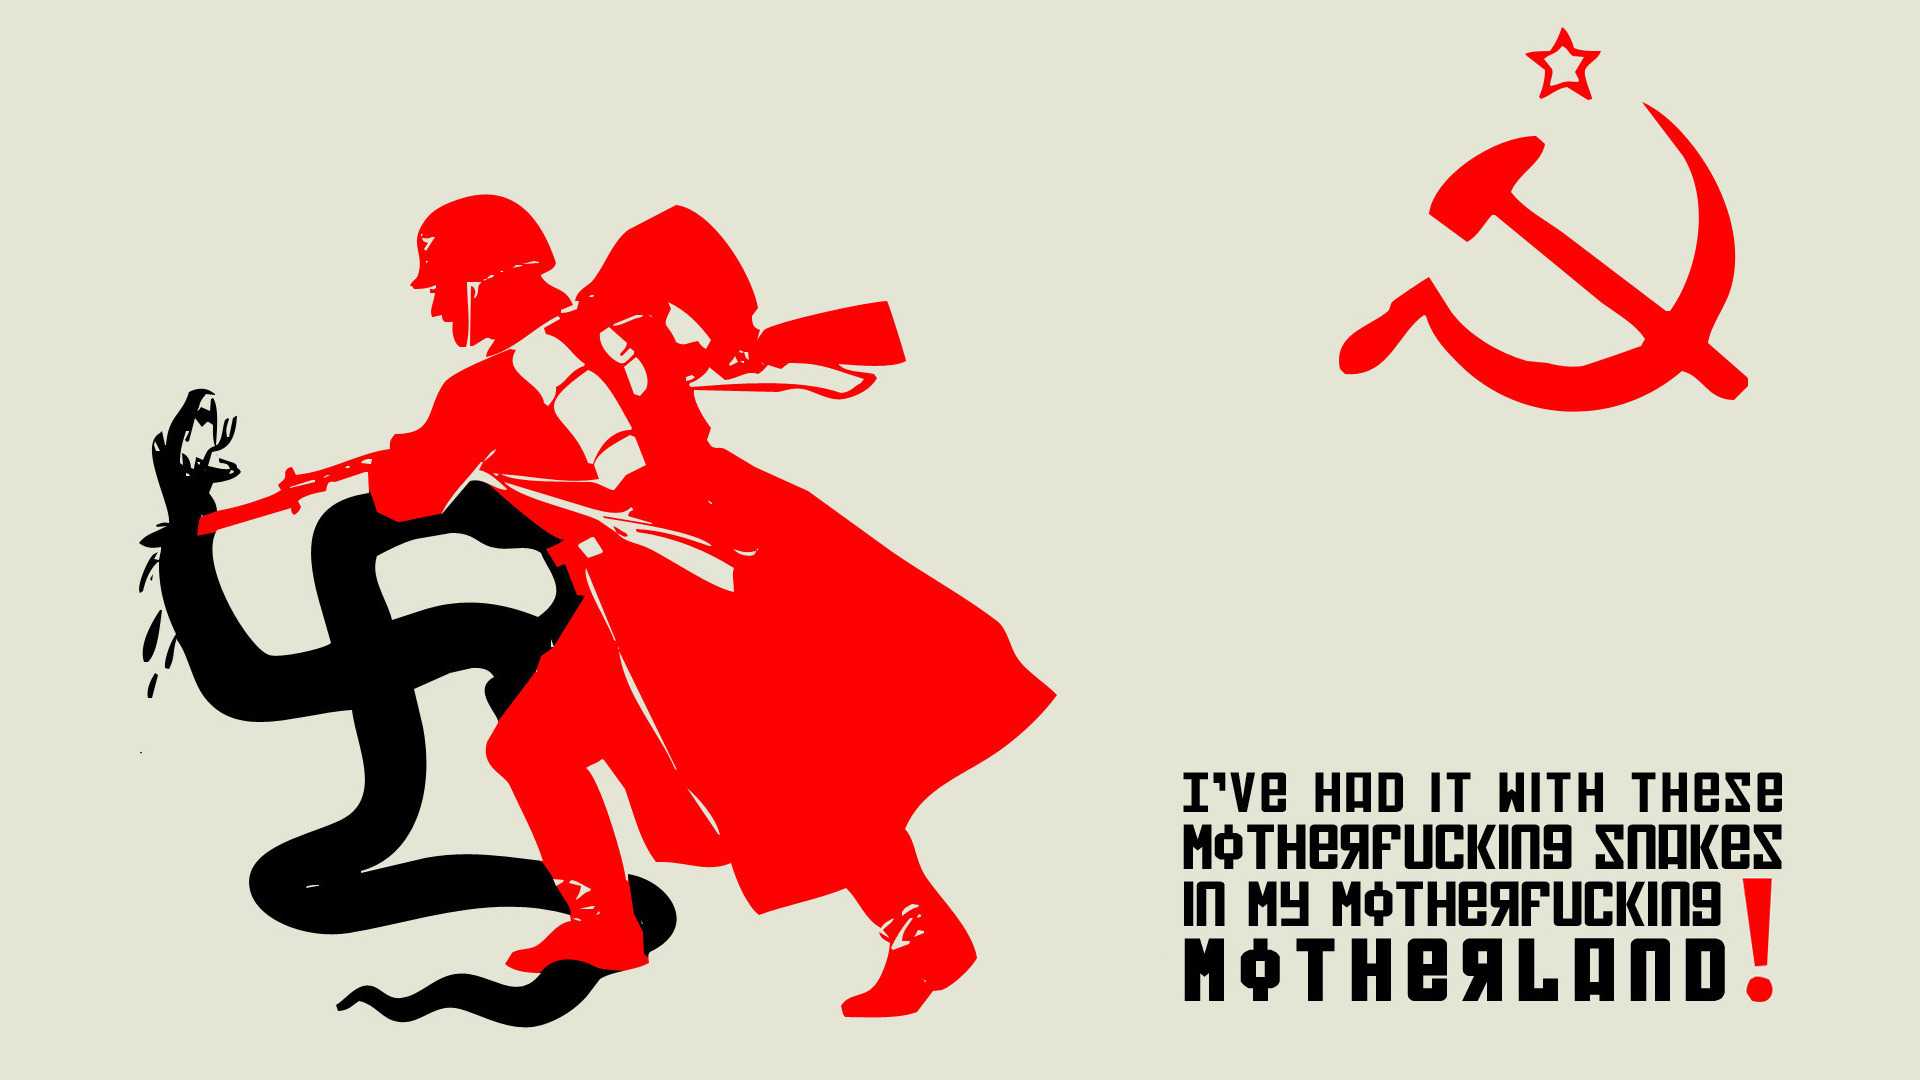 Советский союз серп и молот коммунистическая символика красная звезда коммунизм, советский союз, компьютерные обои, коммунизм, красный флаг png